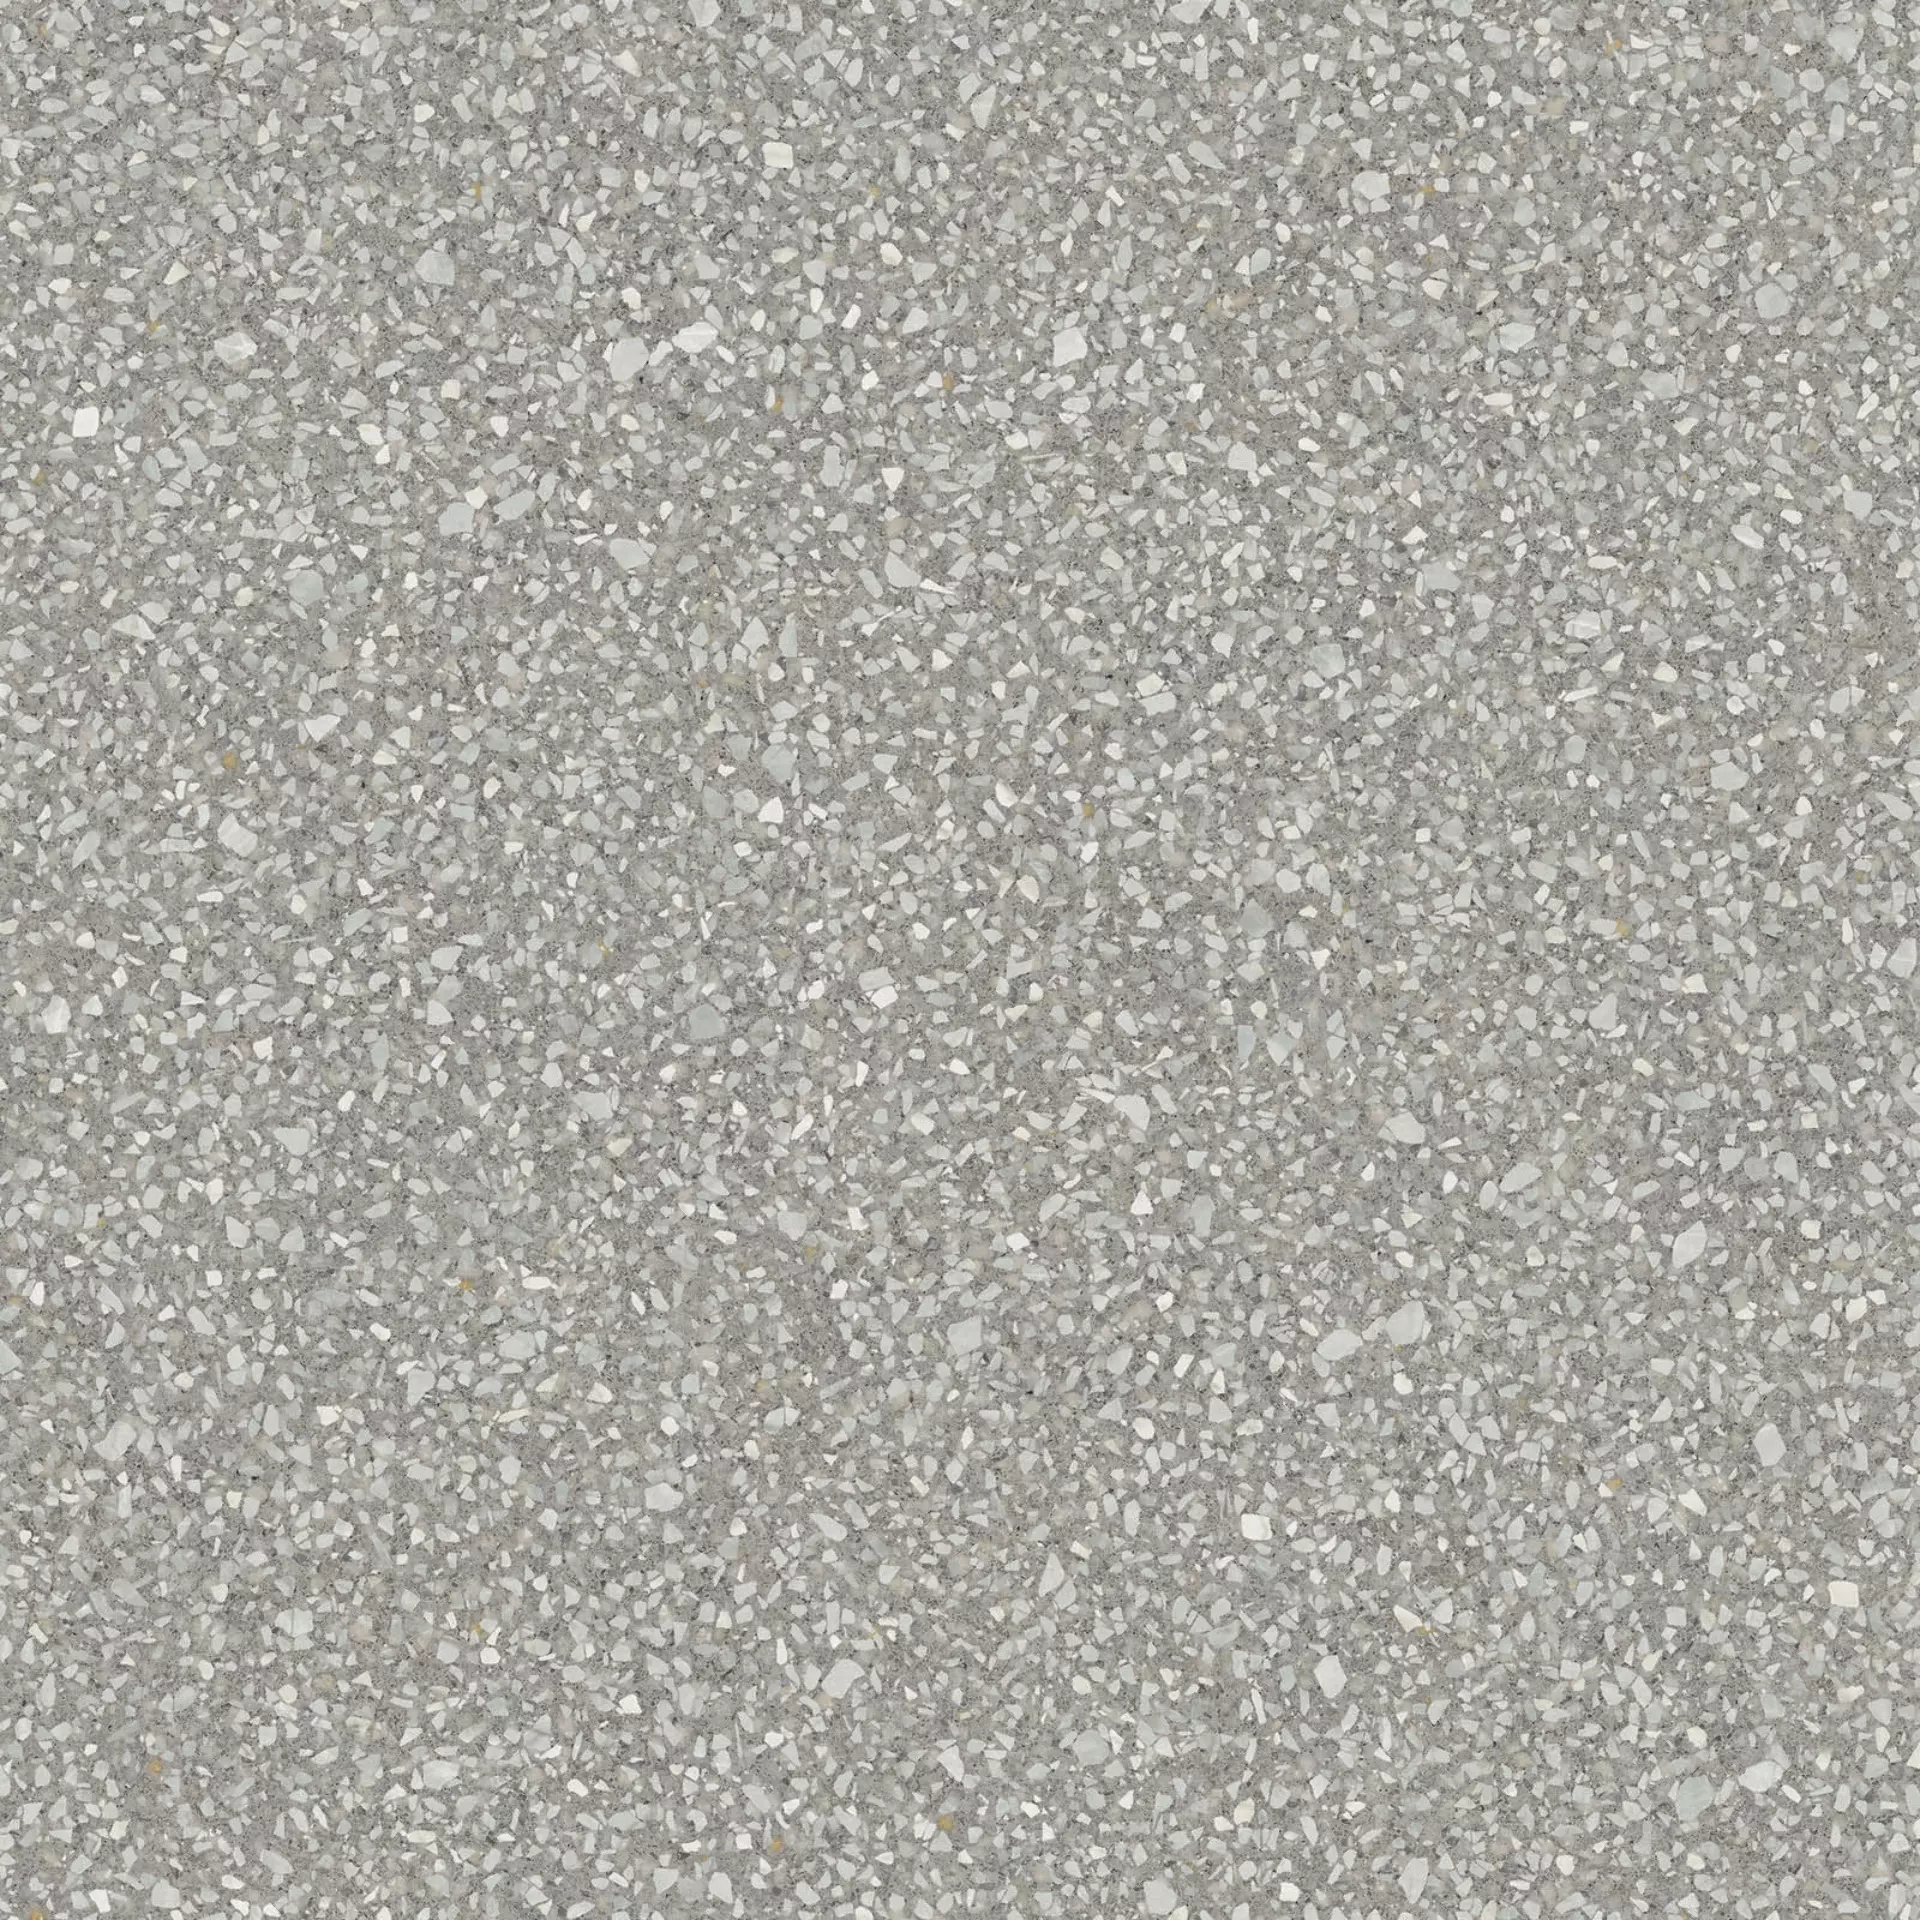 ABK Blend Dots Grey Naturale PF60006710 60x60cm rektifiziert 8,5mm